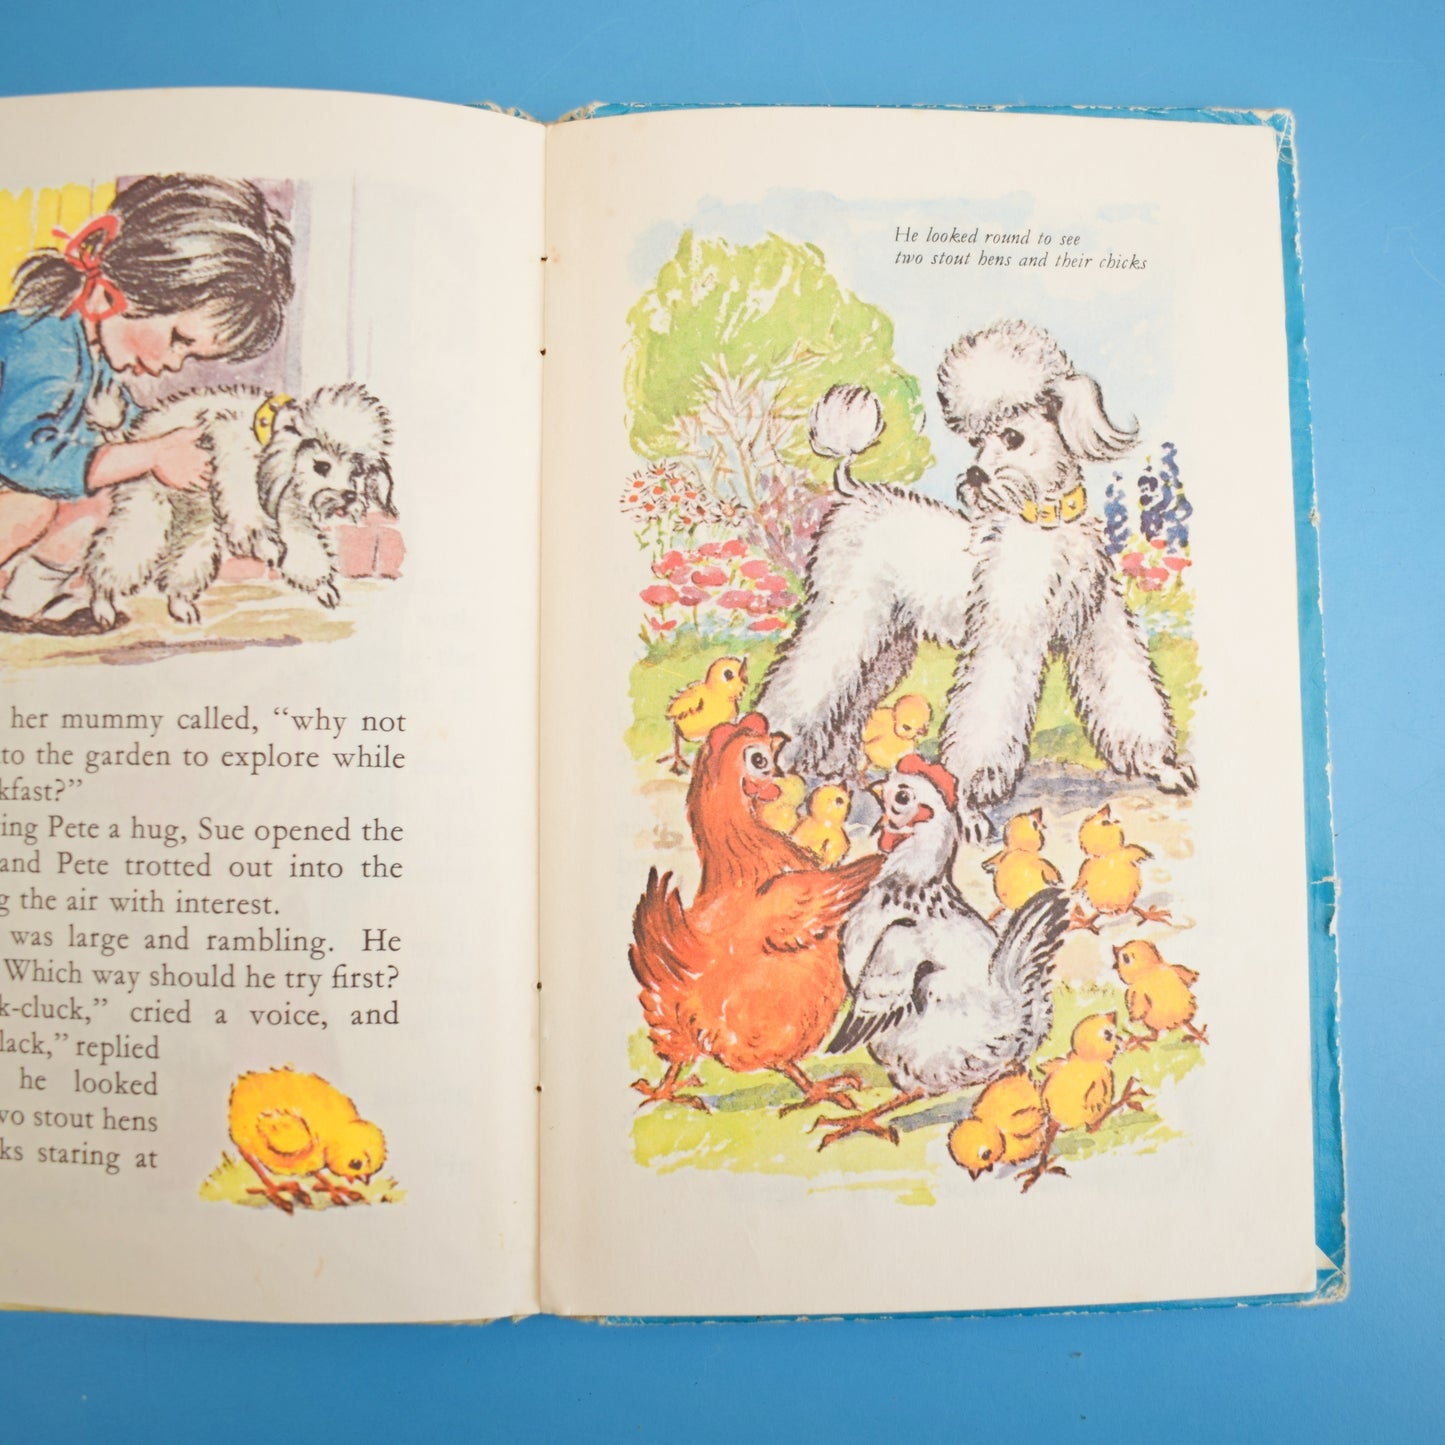 Vintage 1960s Kids Books- Deans